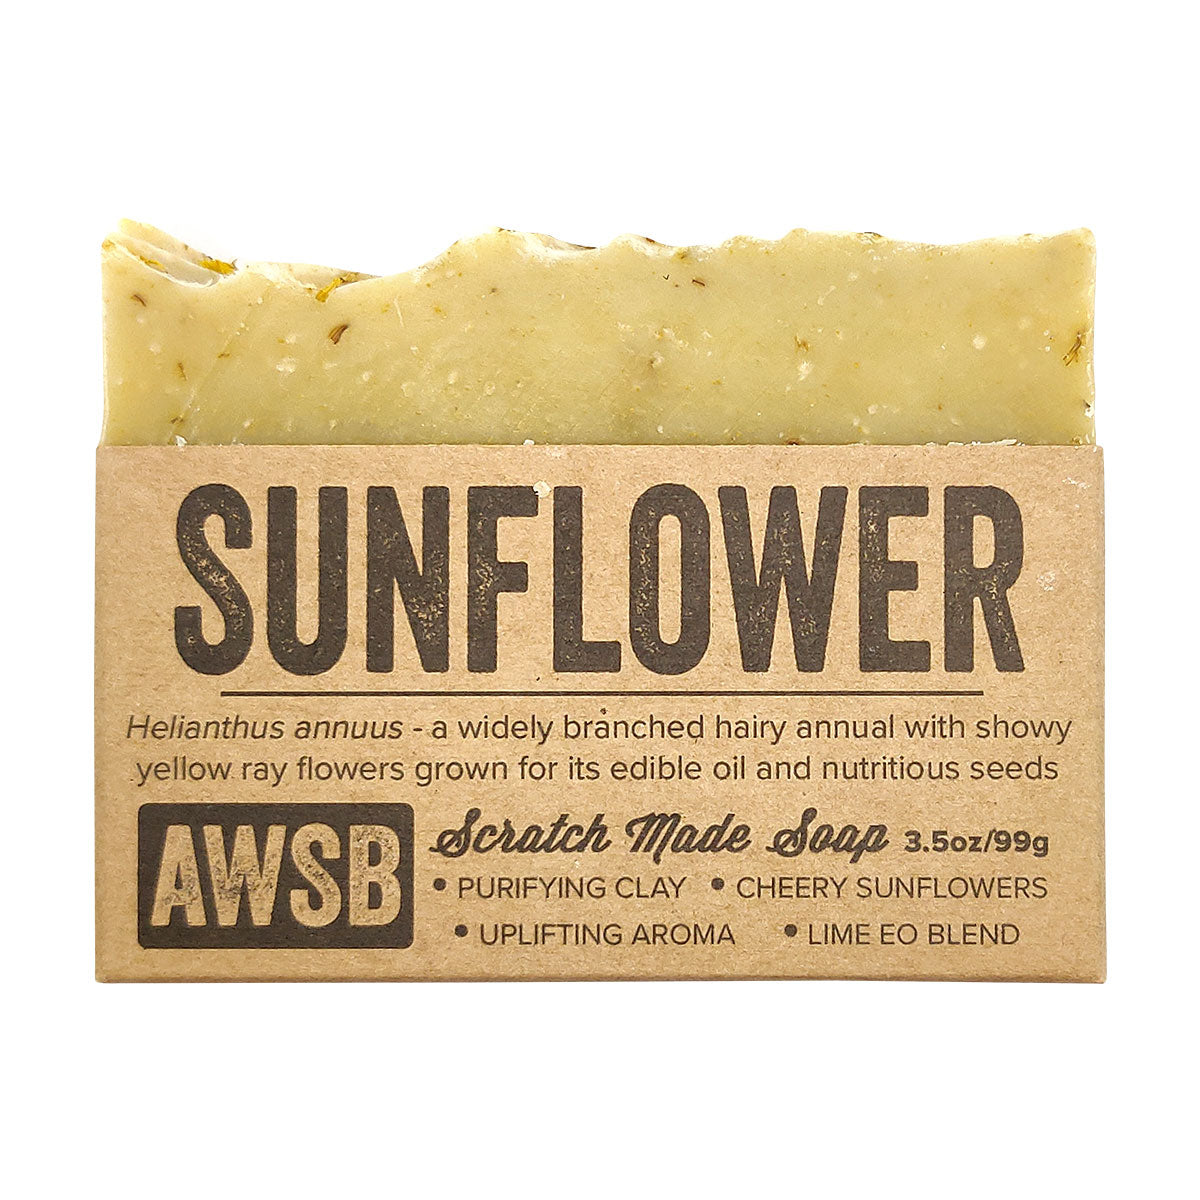 Sunflower Soap for sale, Organic Soap Bar, Natural Skin Care, Homemade Soap Bar, Raw Vegan Soap Bar, Body Soap Bar, Orange Soap Bar, Gift for Her